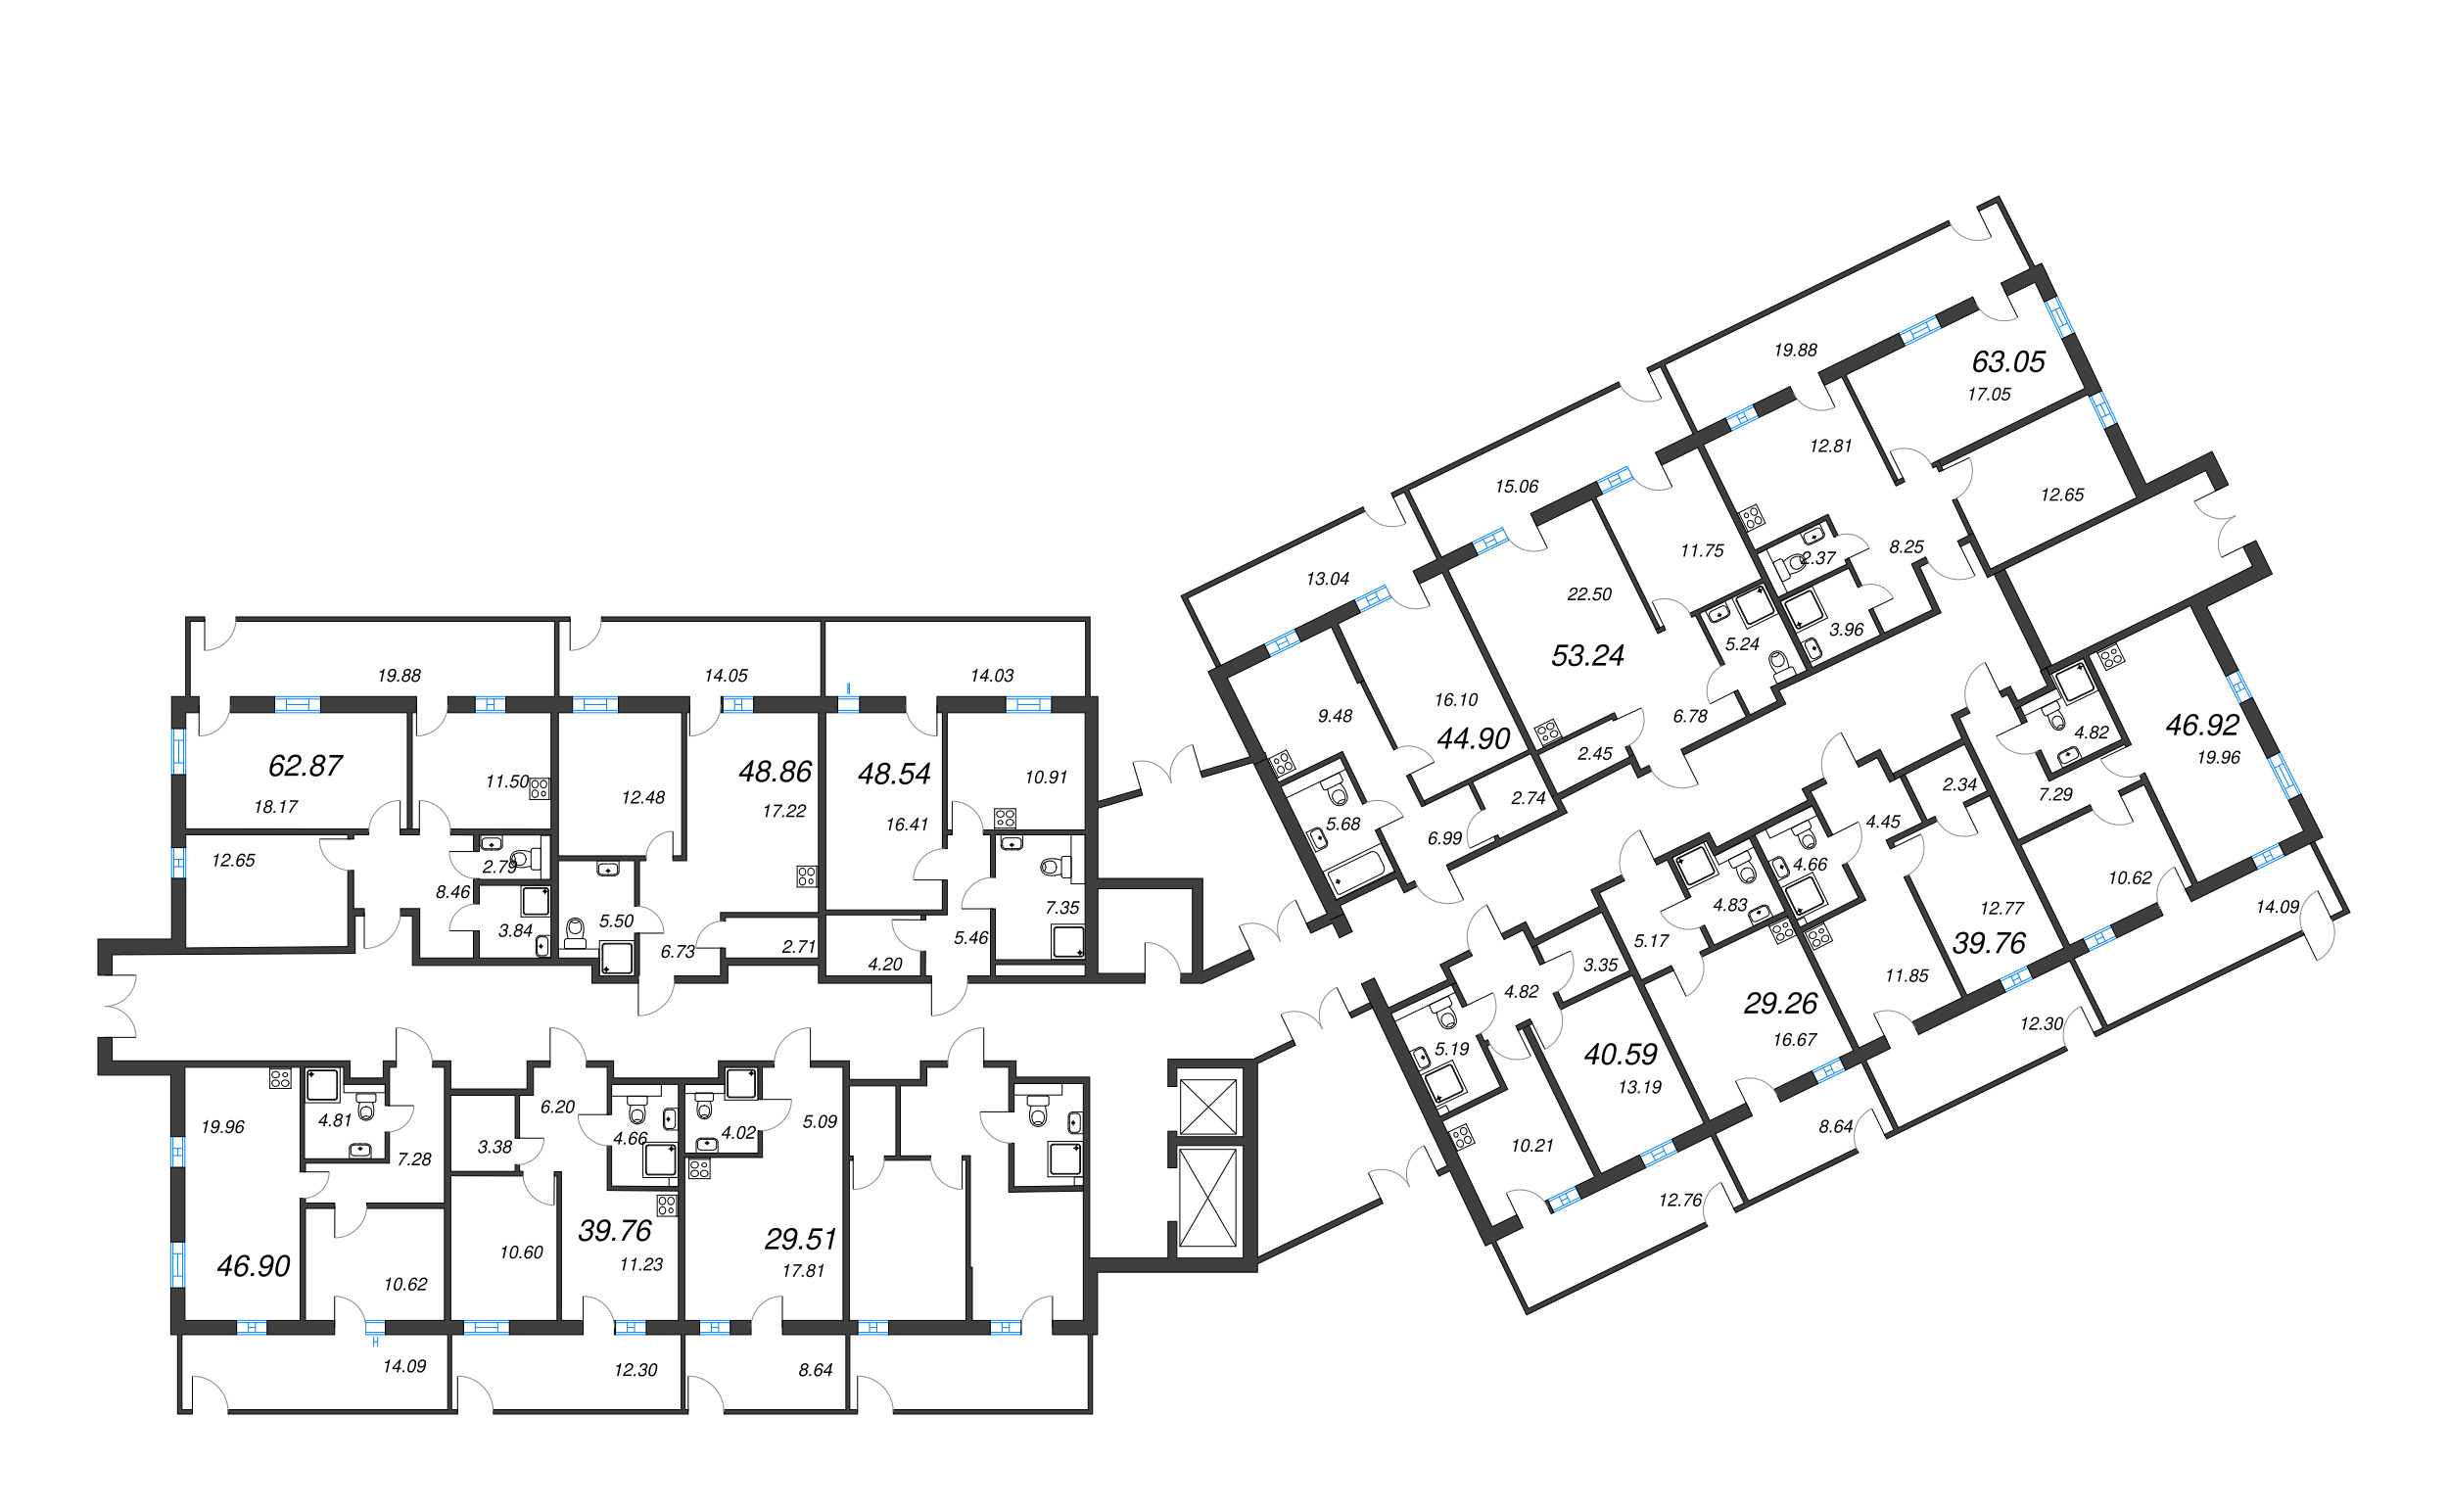 Квартира-студия, 29.26 м² в ЖК "Рощино Residence" - планировка этажа